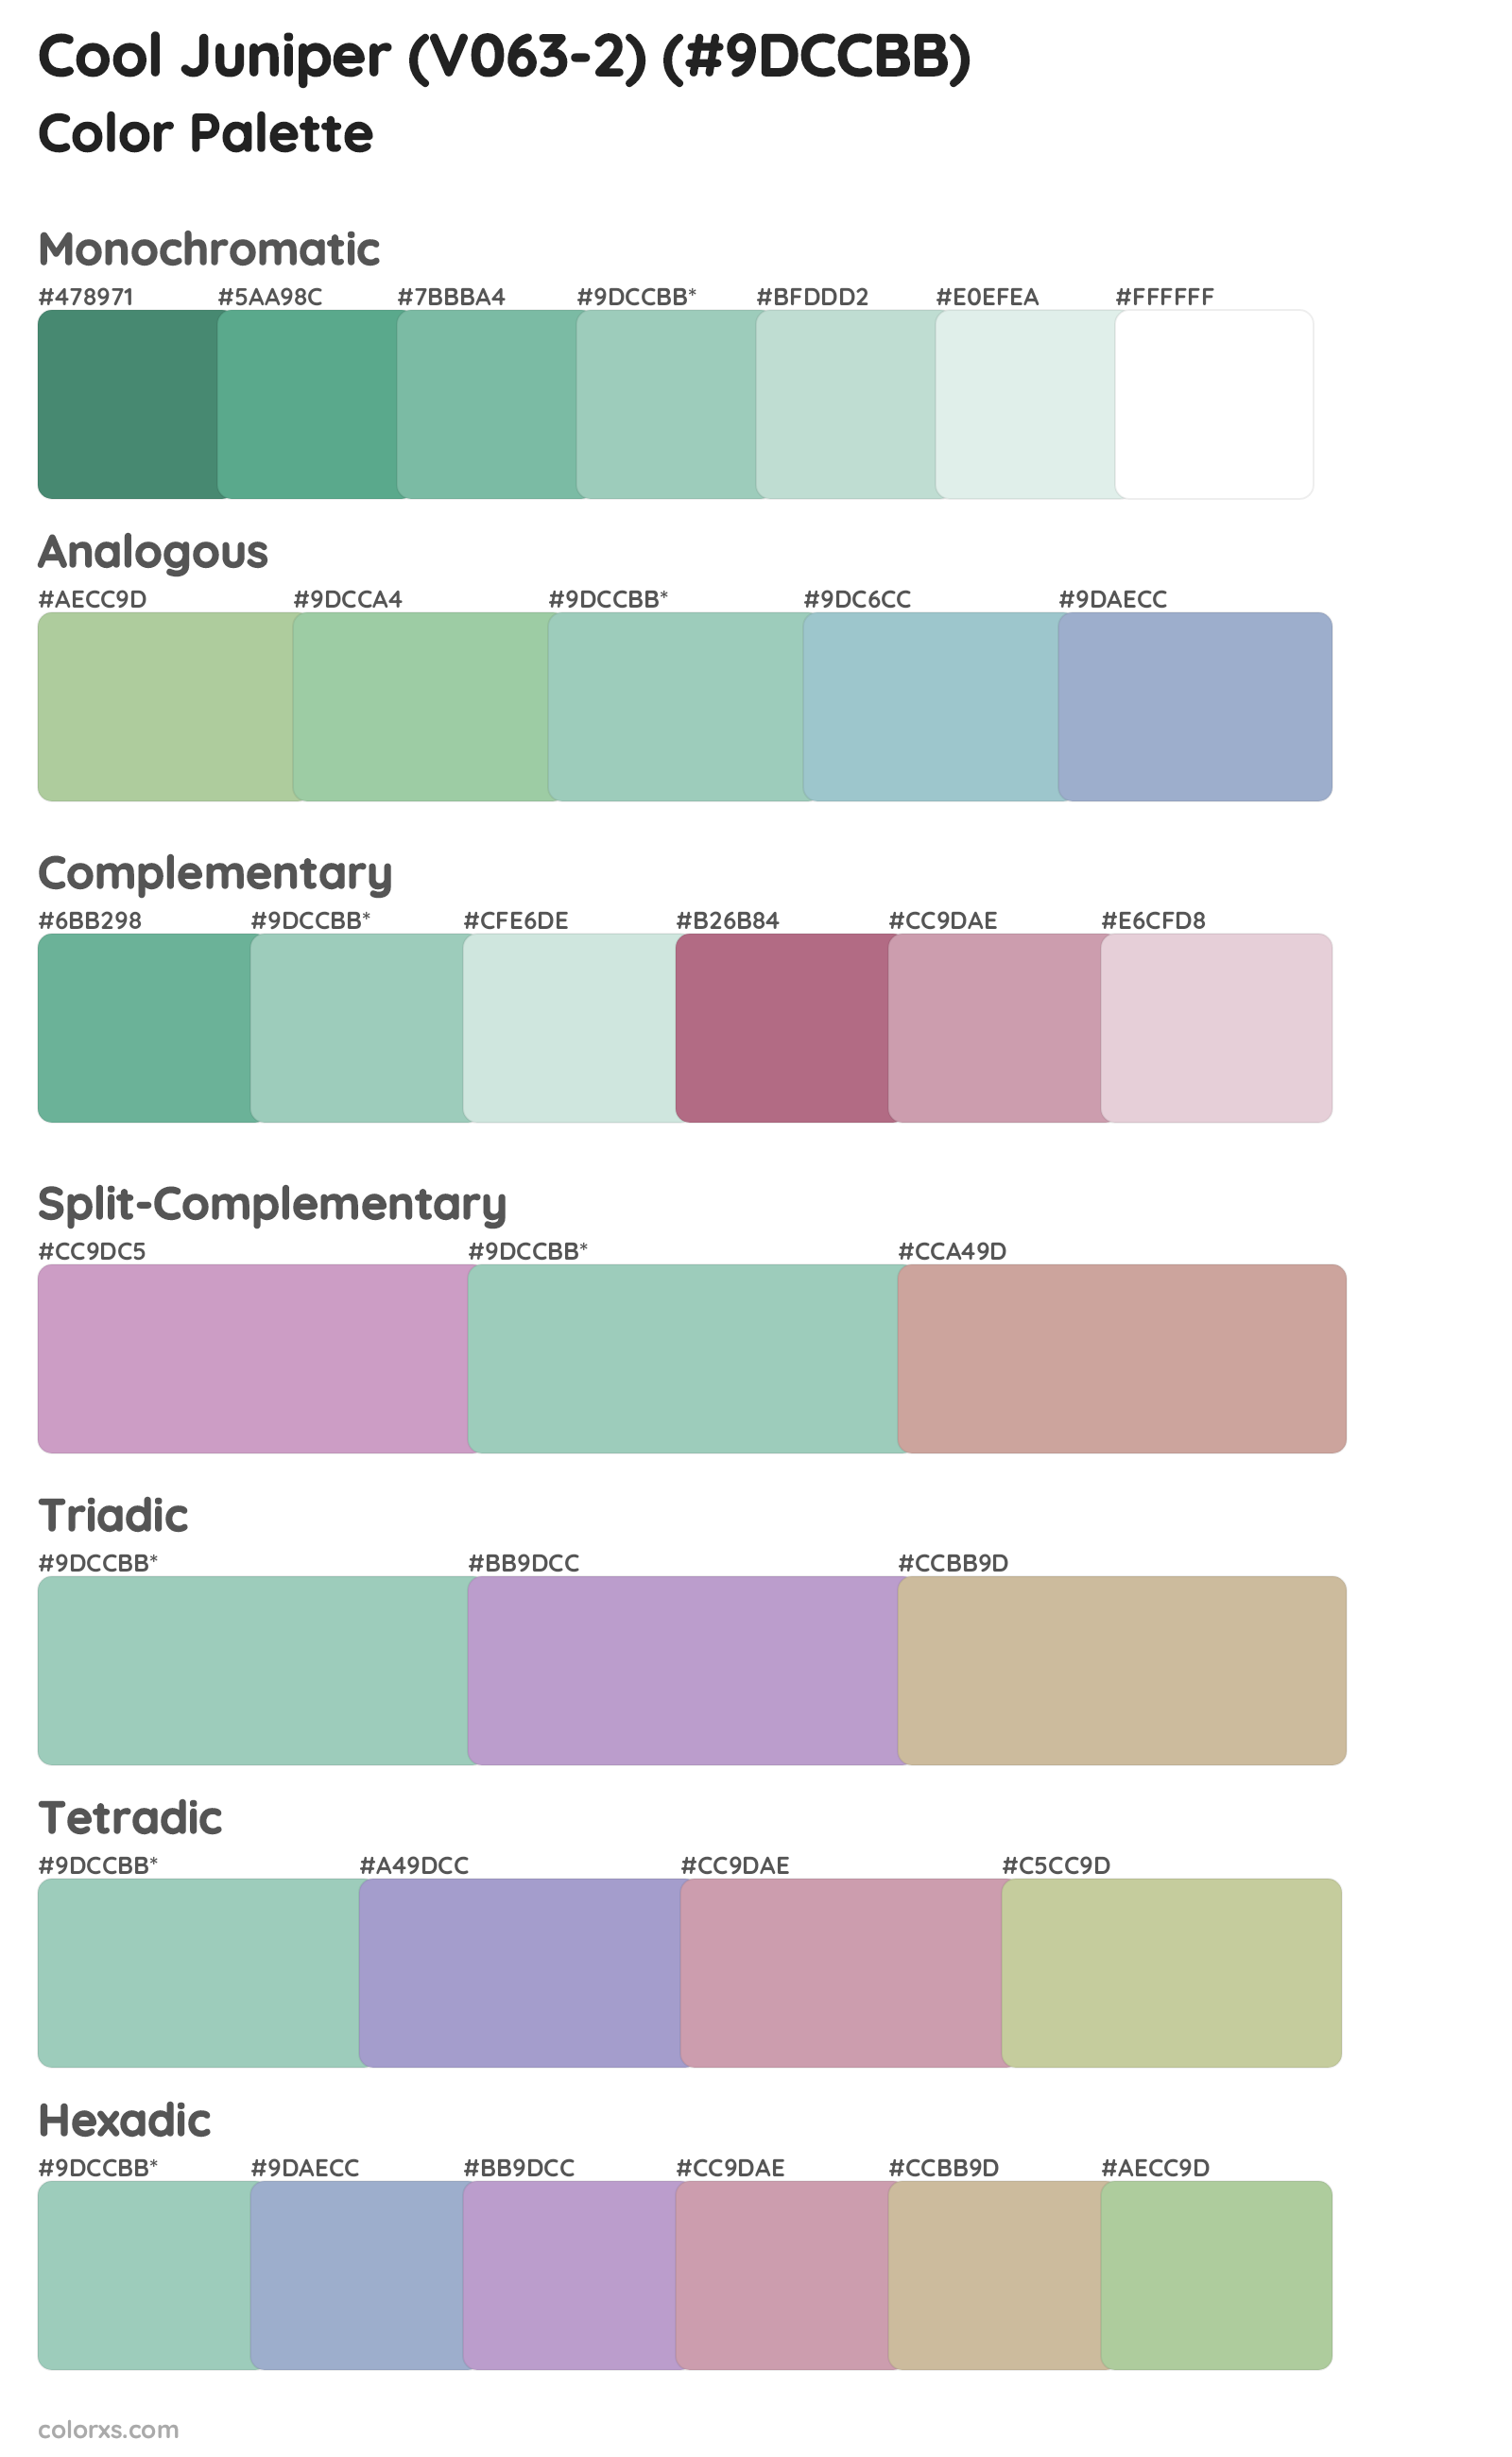 Cool Juniper (V063-2) Color Scheme Palettes